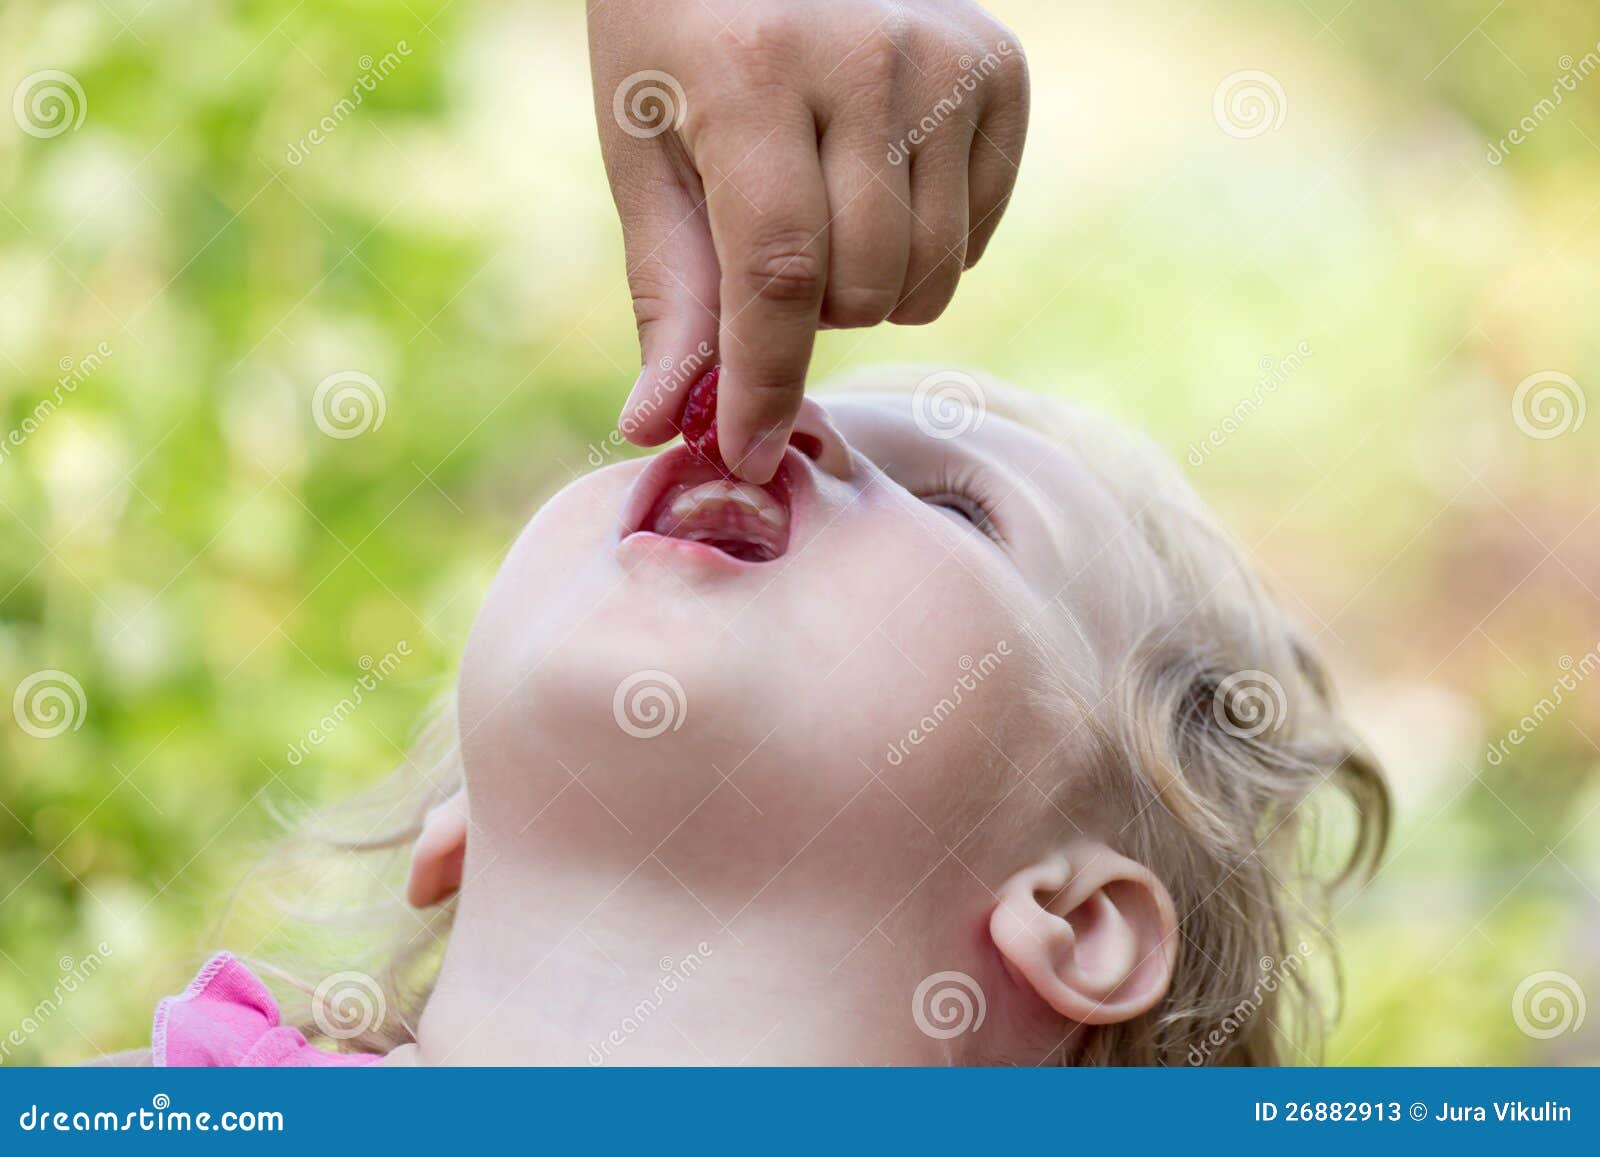 трахают в рот детей (120) фото